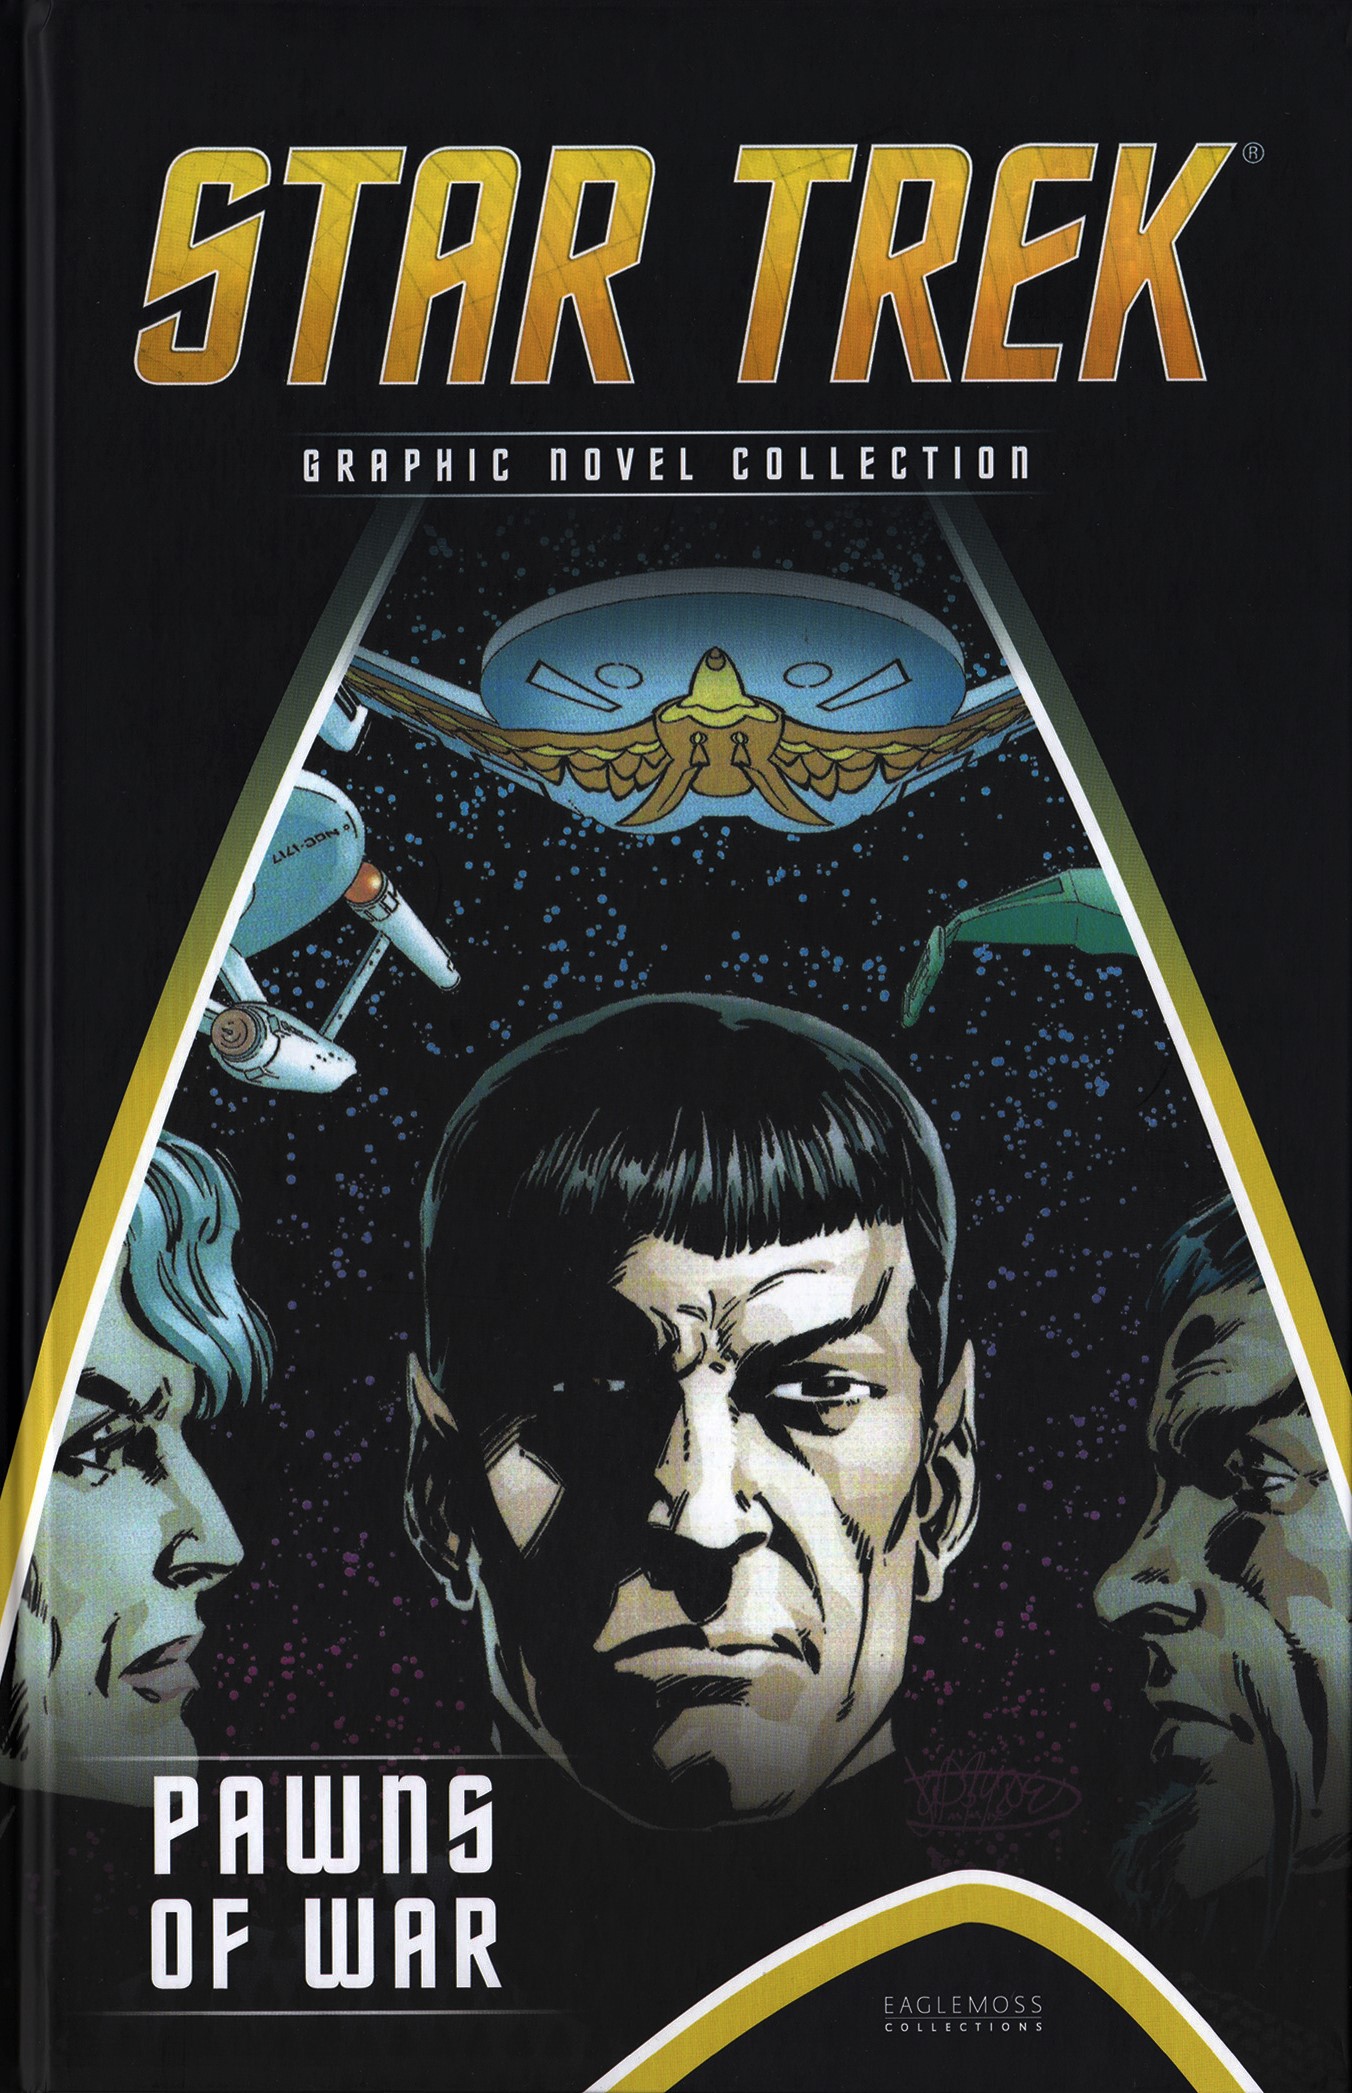 Eaglemoss_Star_Trek_Graphic_Novel_Collection_Issue_104